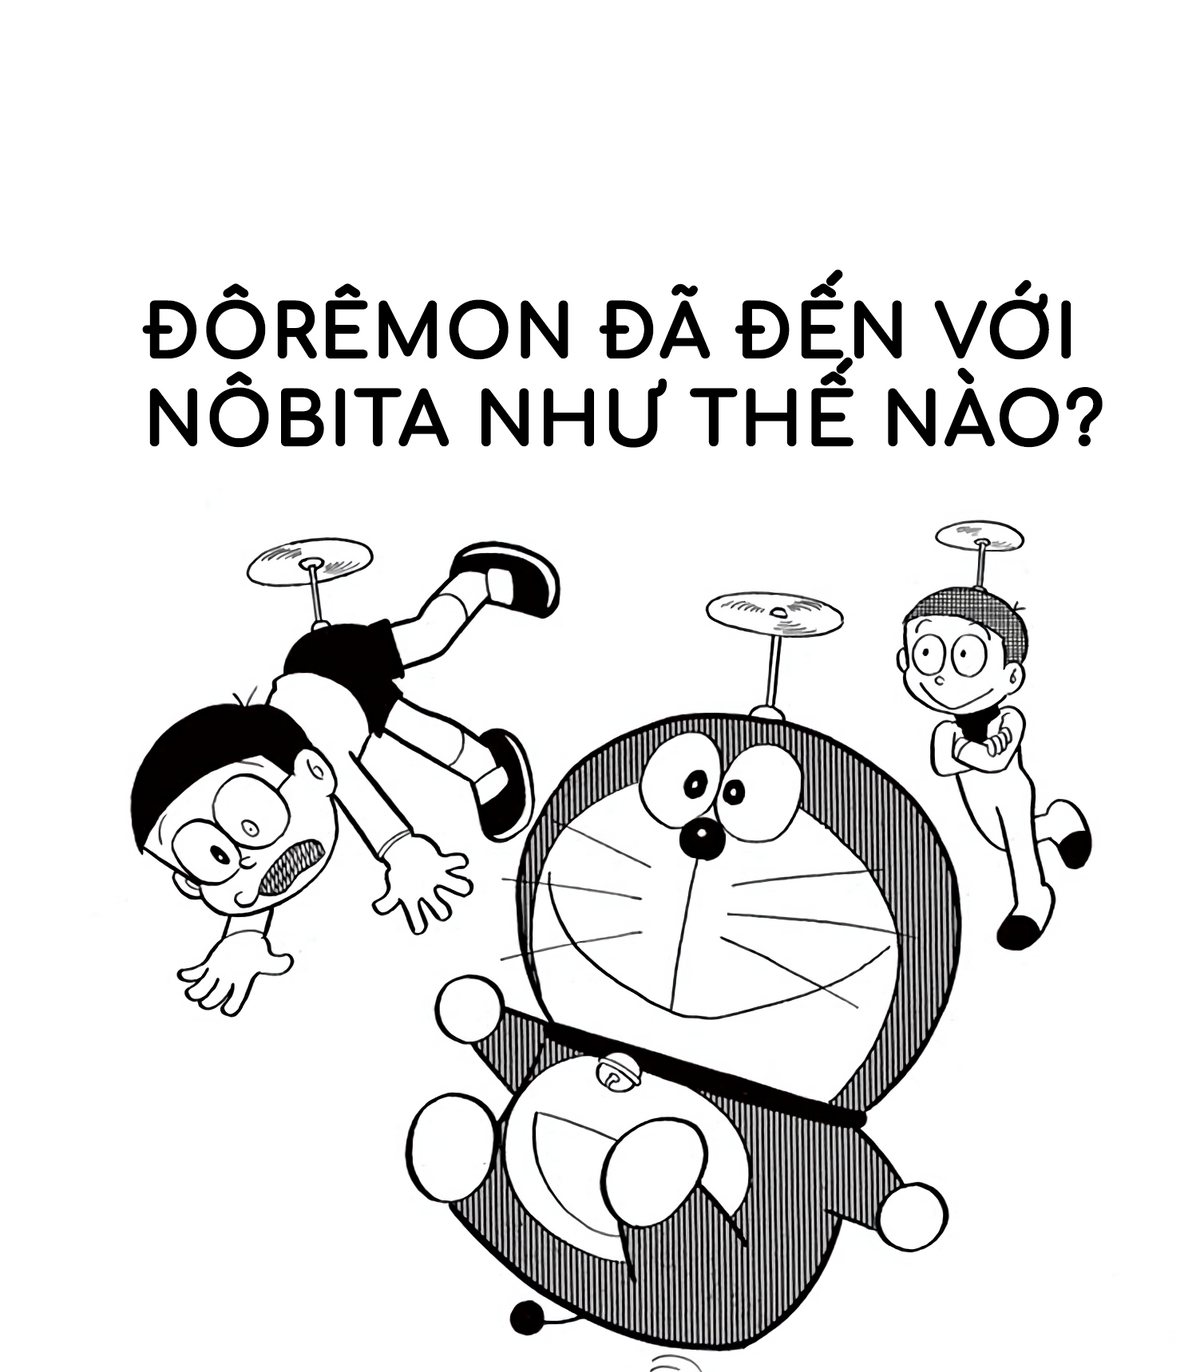 Wikia Doraemon tiếng Việt chính là nguồn tài nguyên vô giá cho những ai đam mê Doraemon. Với hàng ngàn thông tin về lịch sử, nhân vật và các tập phim của Doraemon, đây là nơi lý tưởng để cập nhật kiến thức và thỏa mãn đam mê.